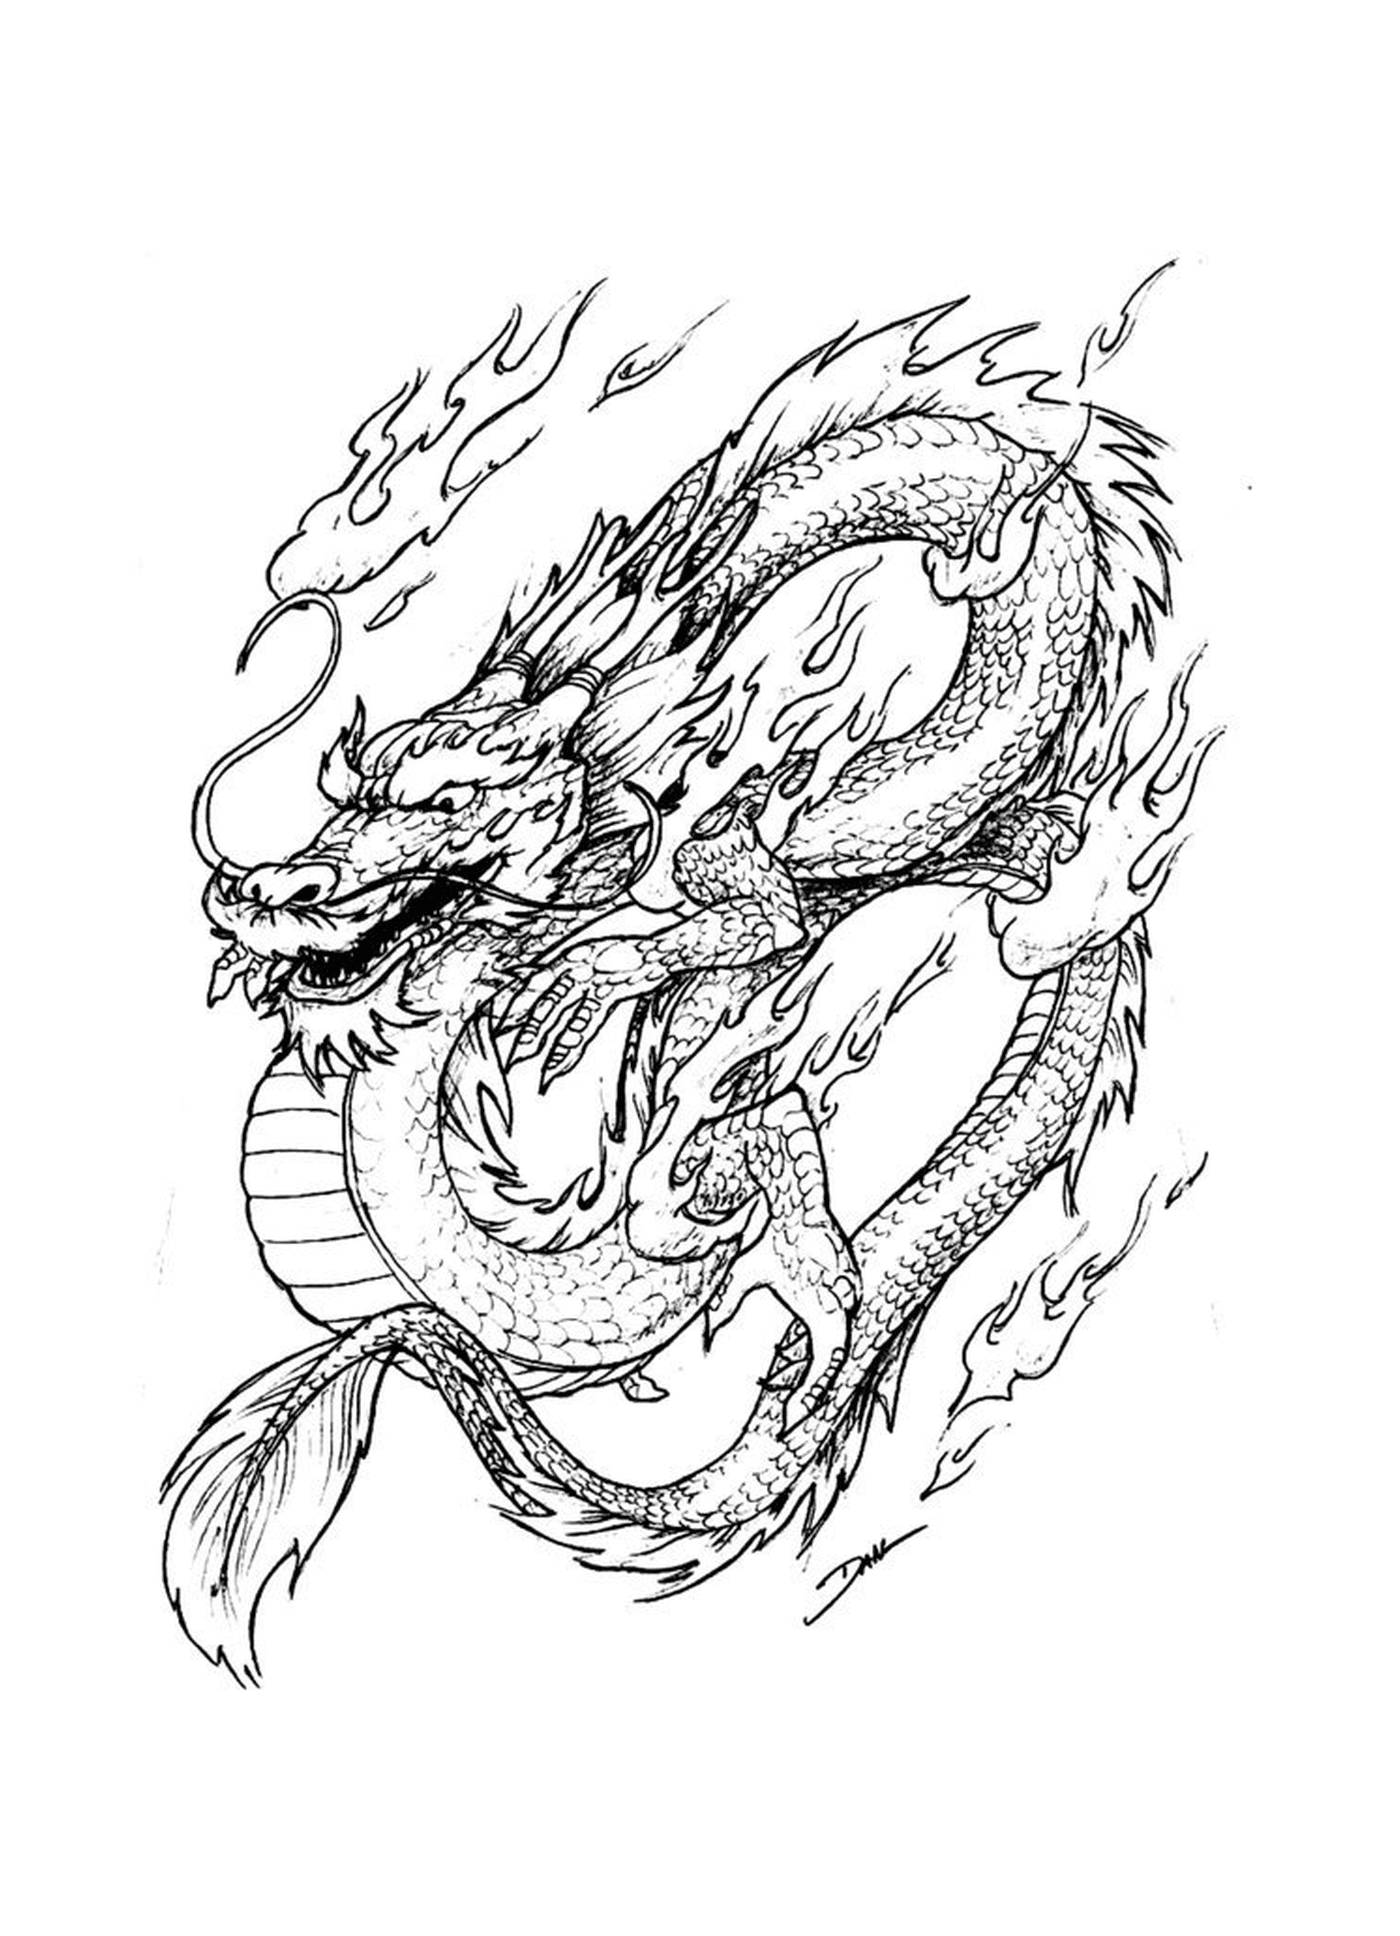  Un dragón oriental inflamado, símbolo de fuerza y pasión 